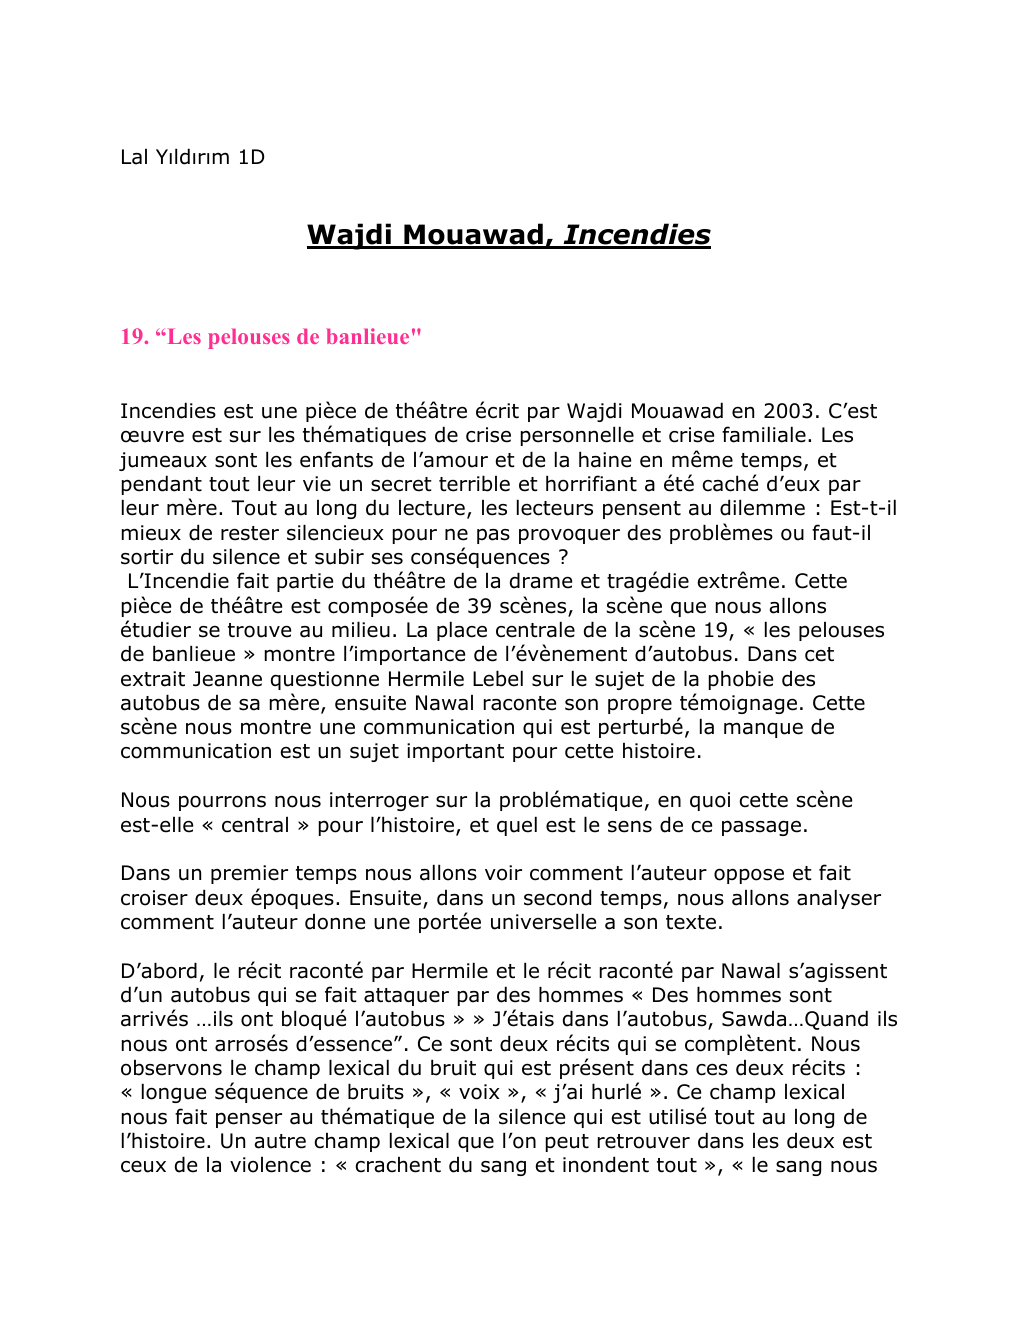 Prévisualisation du document commentaire littéraire incendies: Wajdi Mouawad, Incendies